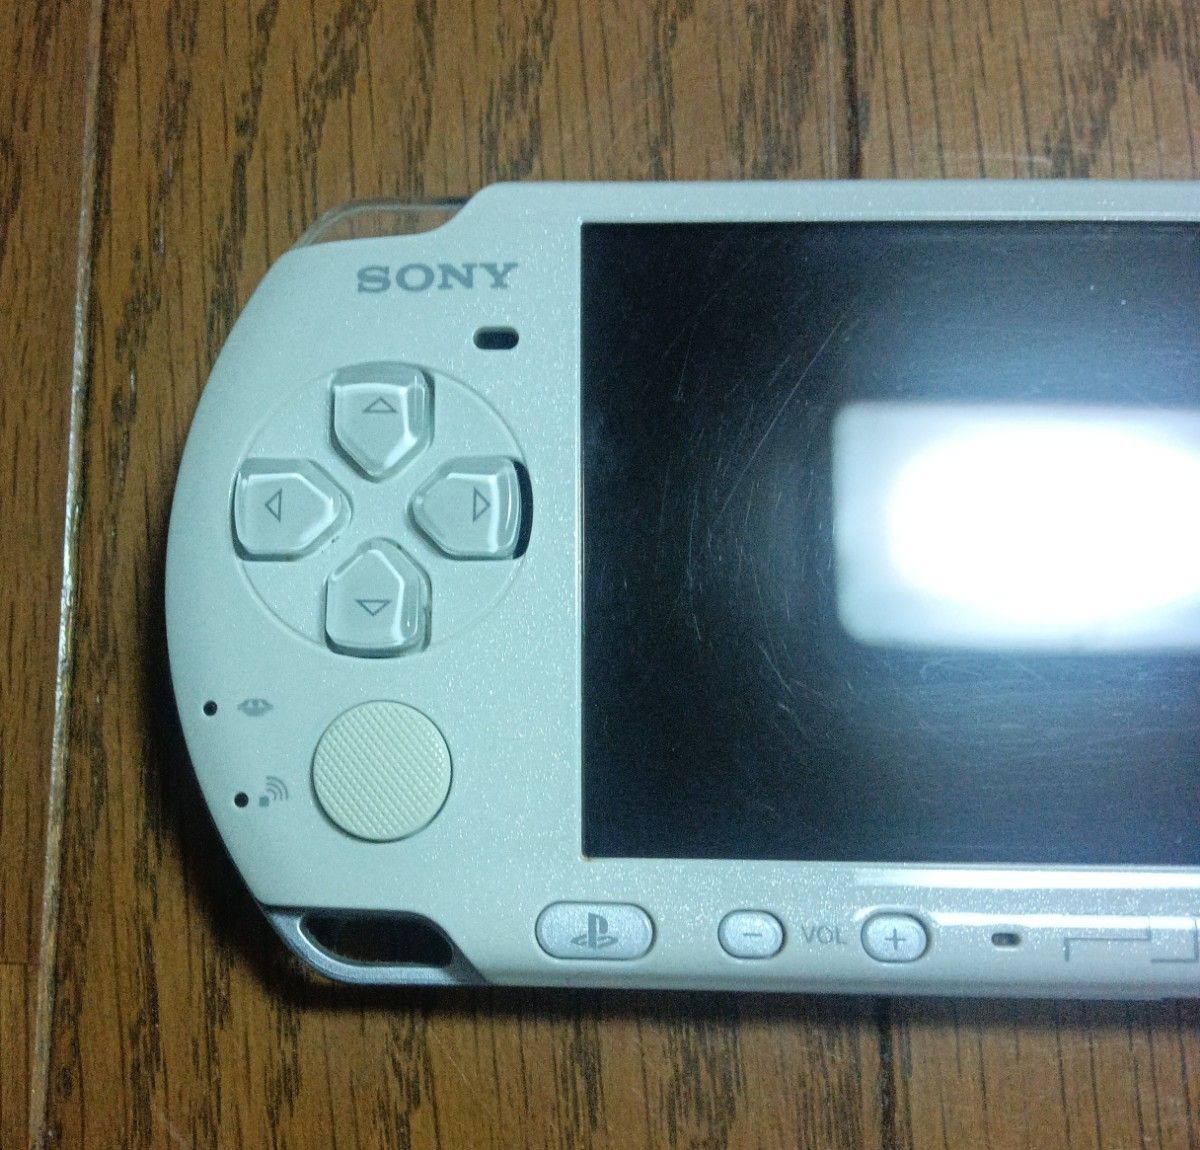 PSP-3000 パールホワイト 中古品 本体のみ ◯ボタンに潰れ有り 起動確認済み